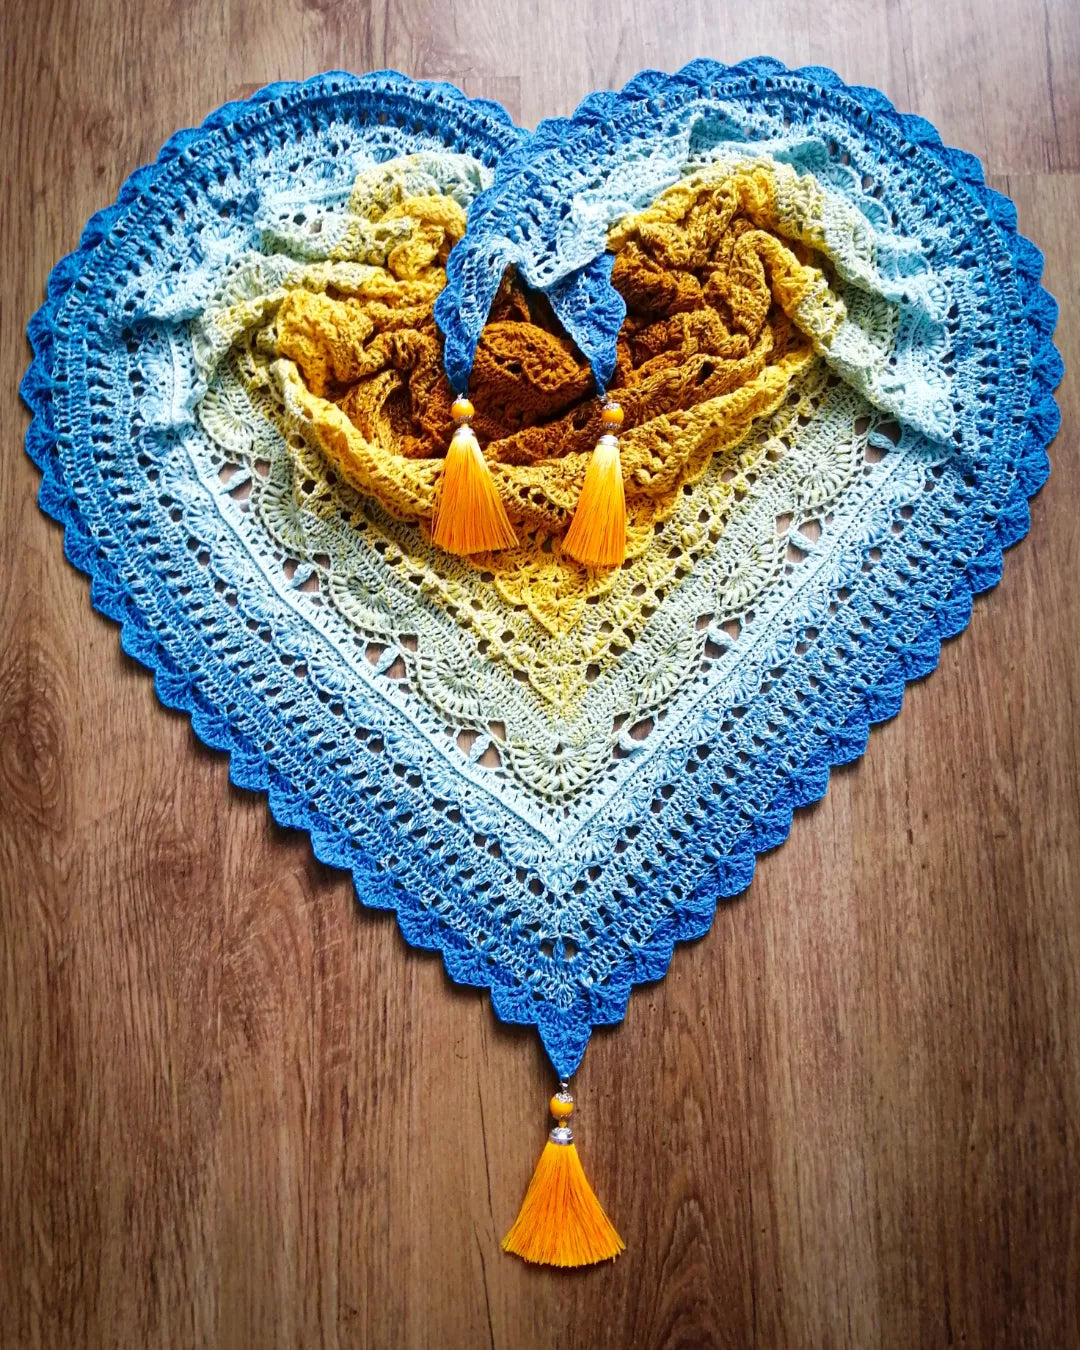 Poseidon shawl pattern by Ancy-Fancy